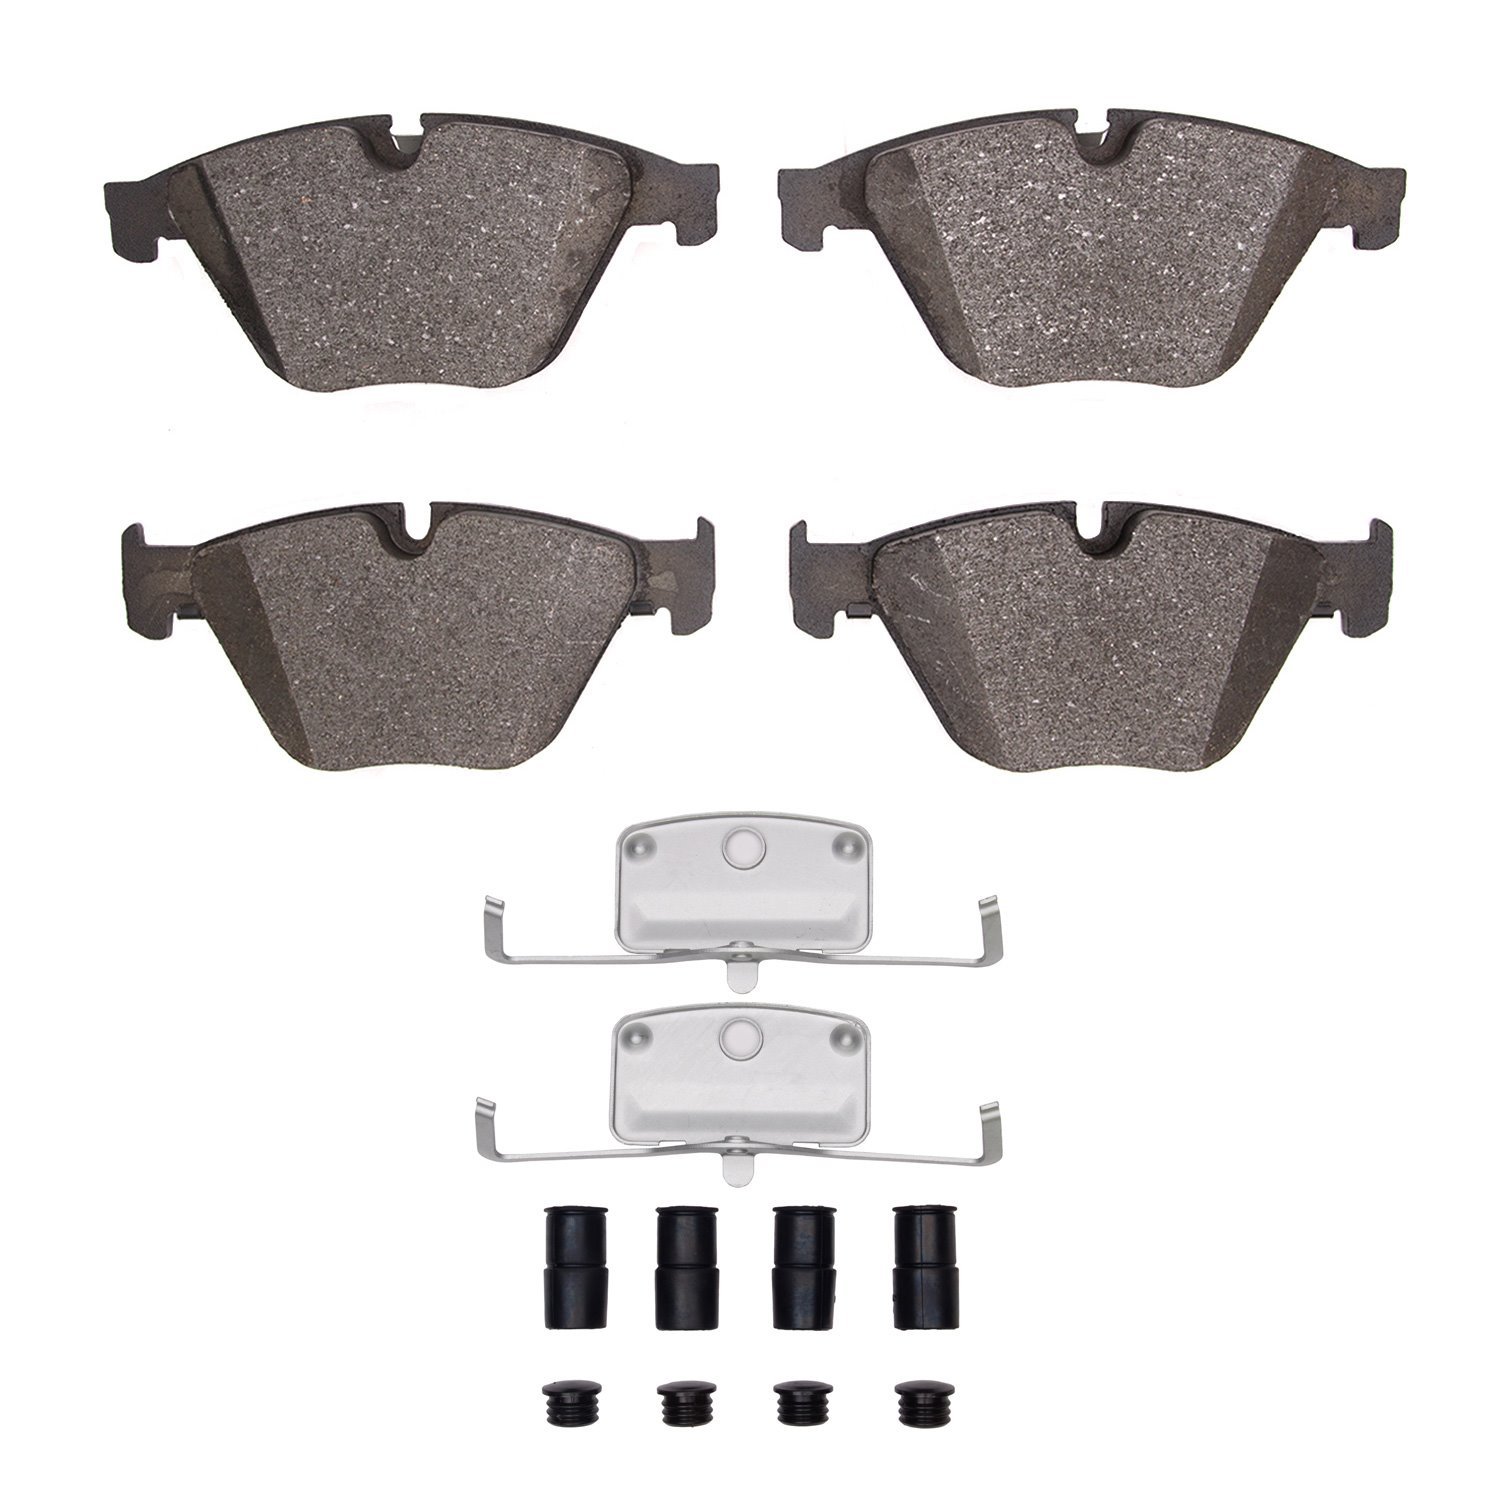 Euro Ceramic Brake Pads & Hardware Kit, 2011-2019 BMW, Position: Front